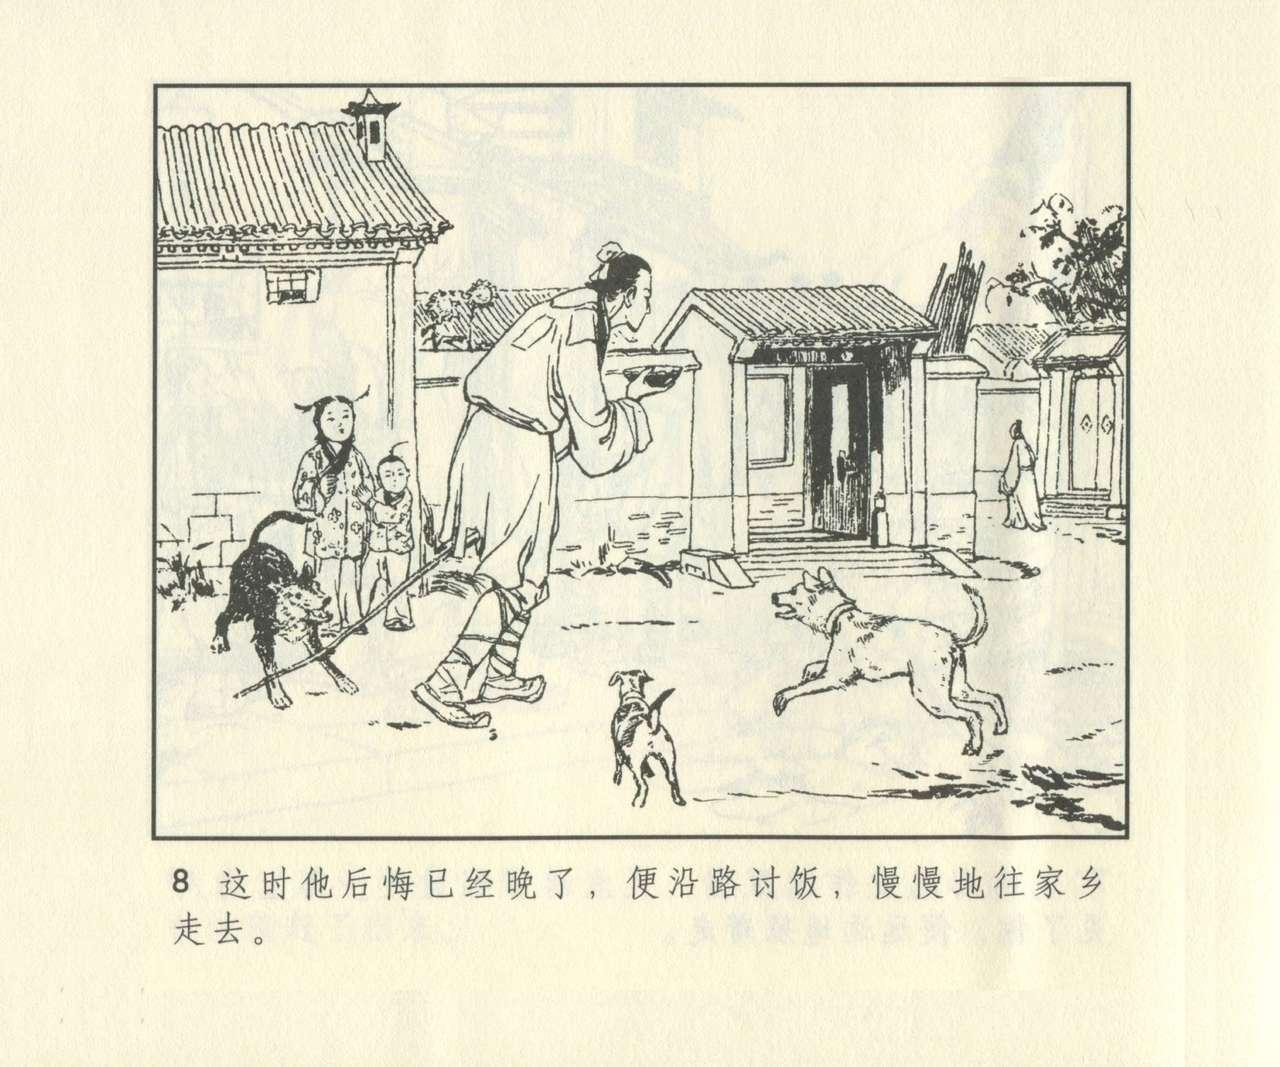 聊斋志异 张玮等绘 天津人民美术出版社 卷二十一 ~ 三十 624